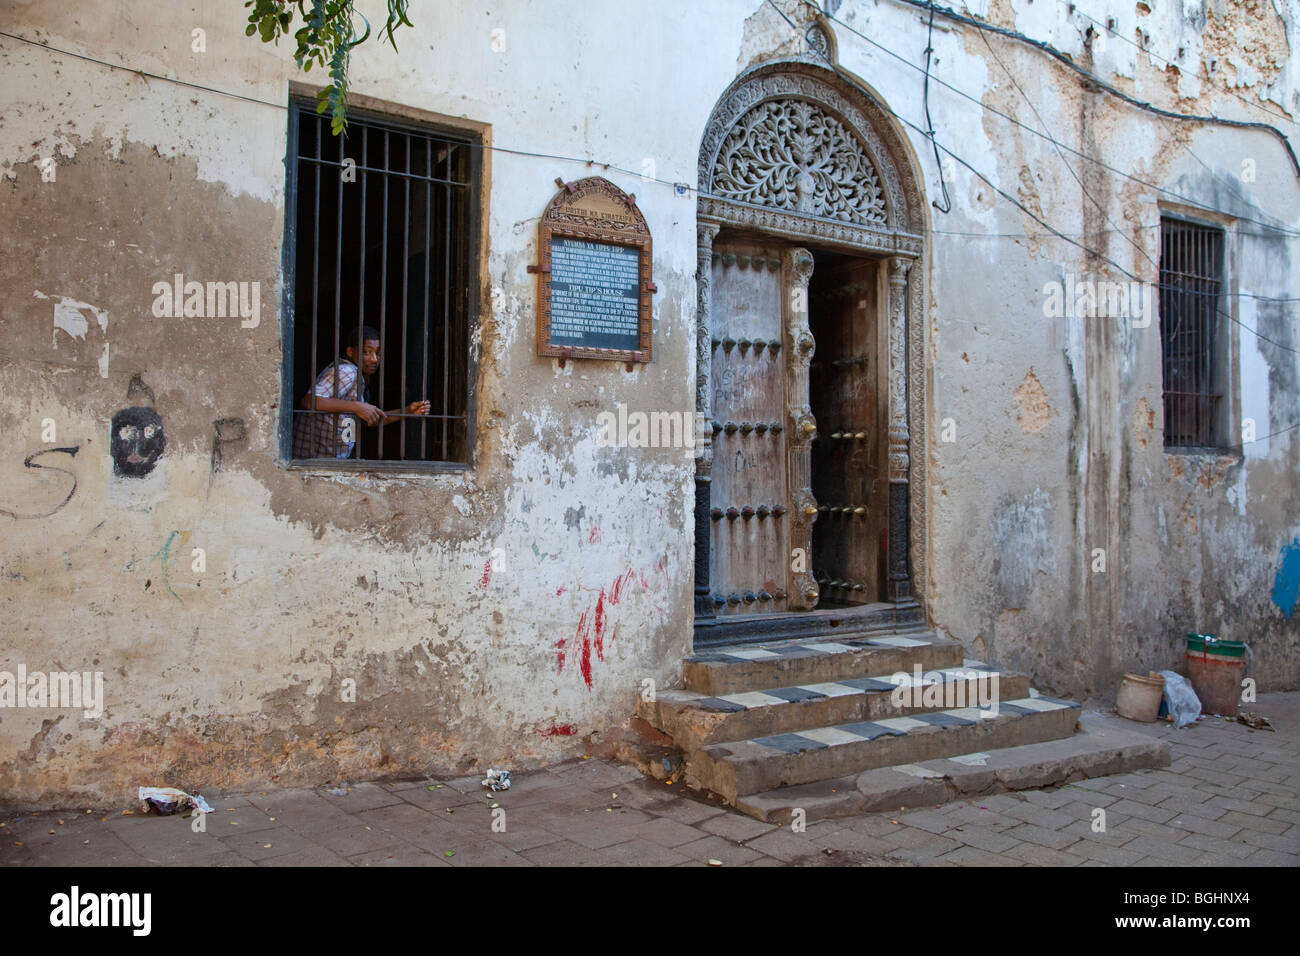 Zanzibar, Tanzania. Casa di Tippu Tip, xix secolo commerciante Slave. In stile-Indiano porta scolpito, con sommità arrotondata. Foto Stock